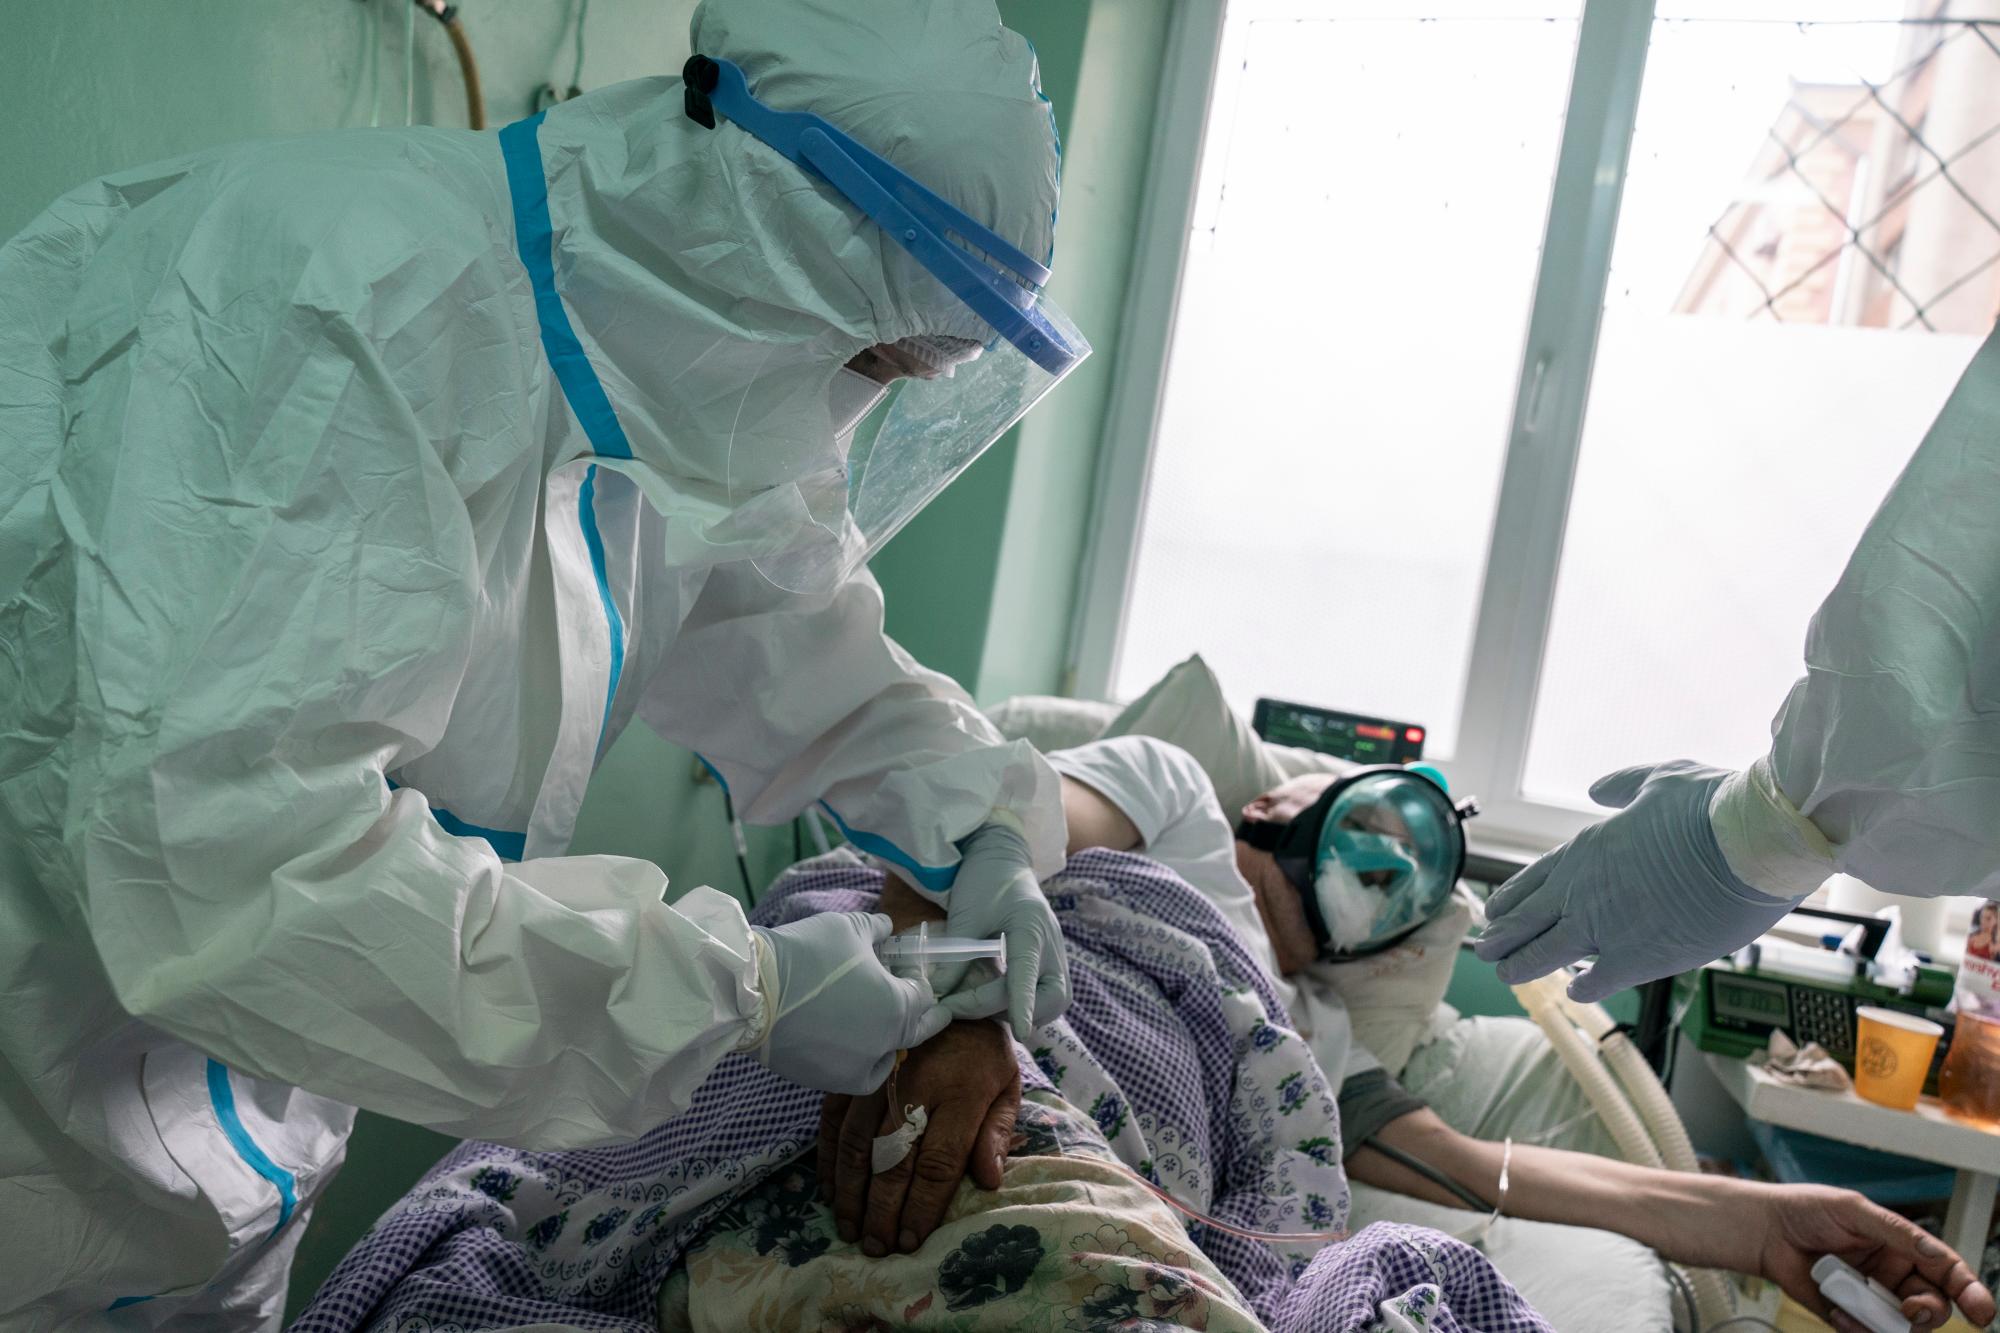 En esta foto tomada el lunes 4 de mayo de 2020, una enfermera, con un traje especial para protegerse contra el coronavirus, administra medicamentos a un paciente con coronavirus en una unidad de cuidados intensivos en un hospital regional en Chernivtsi, Ucrania. El problemático sistema de salud de Ucrania ha sido abrumado por COVID-19, a pesar de que ha reportado un número relativamente bajo de casos. (Foto AP / Evgeniy Maloletka)